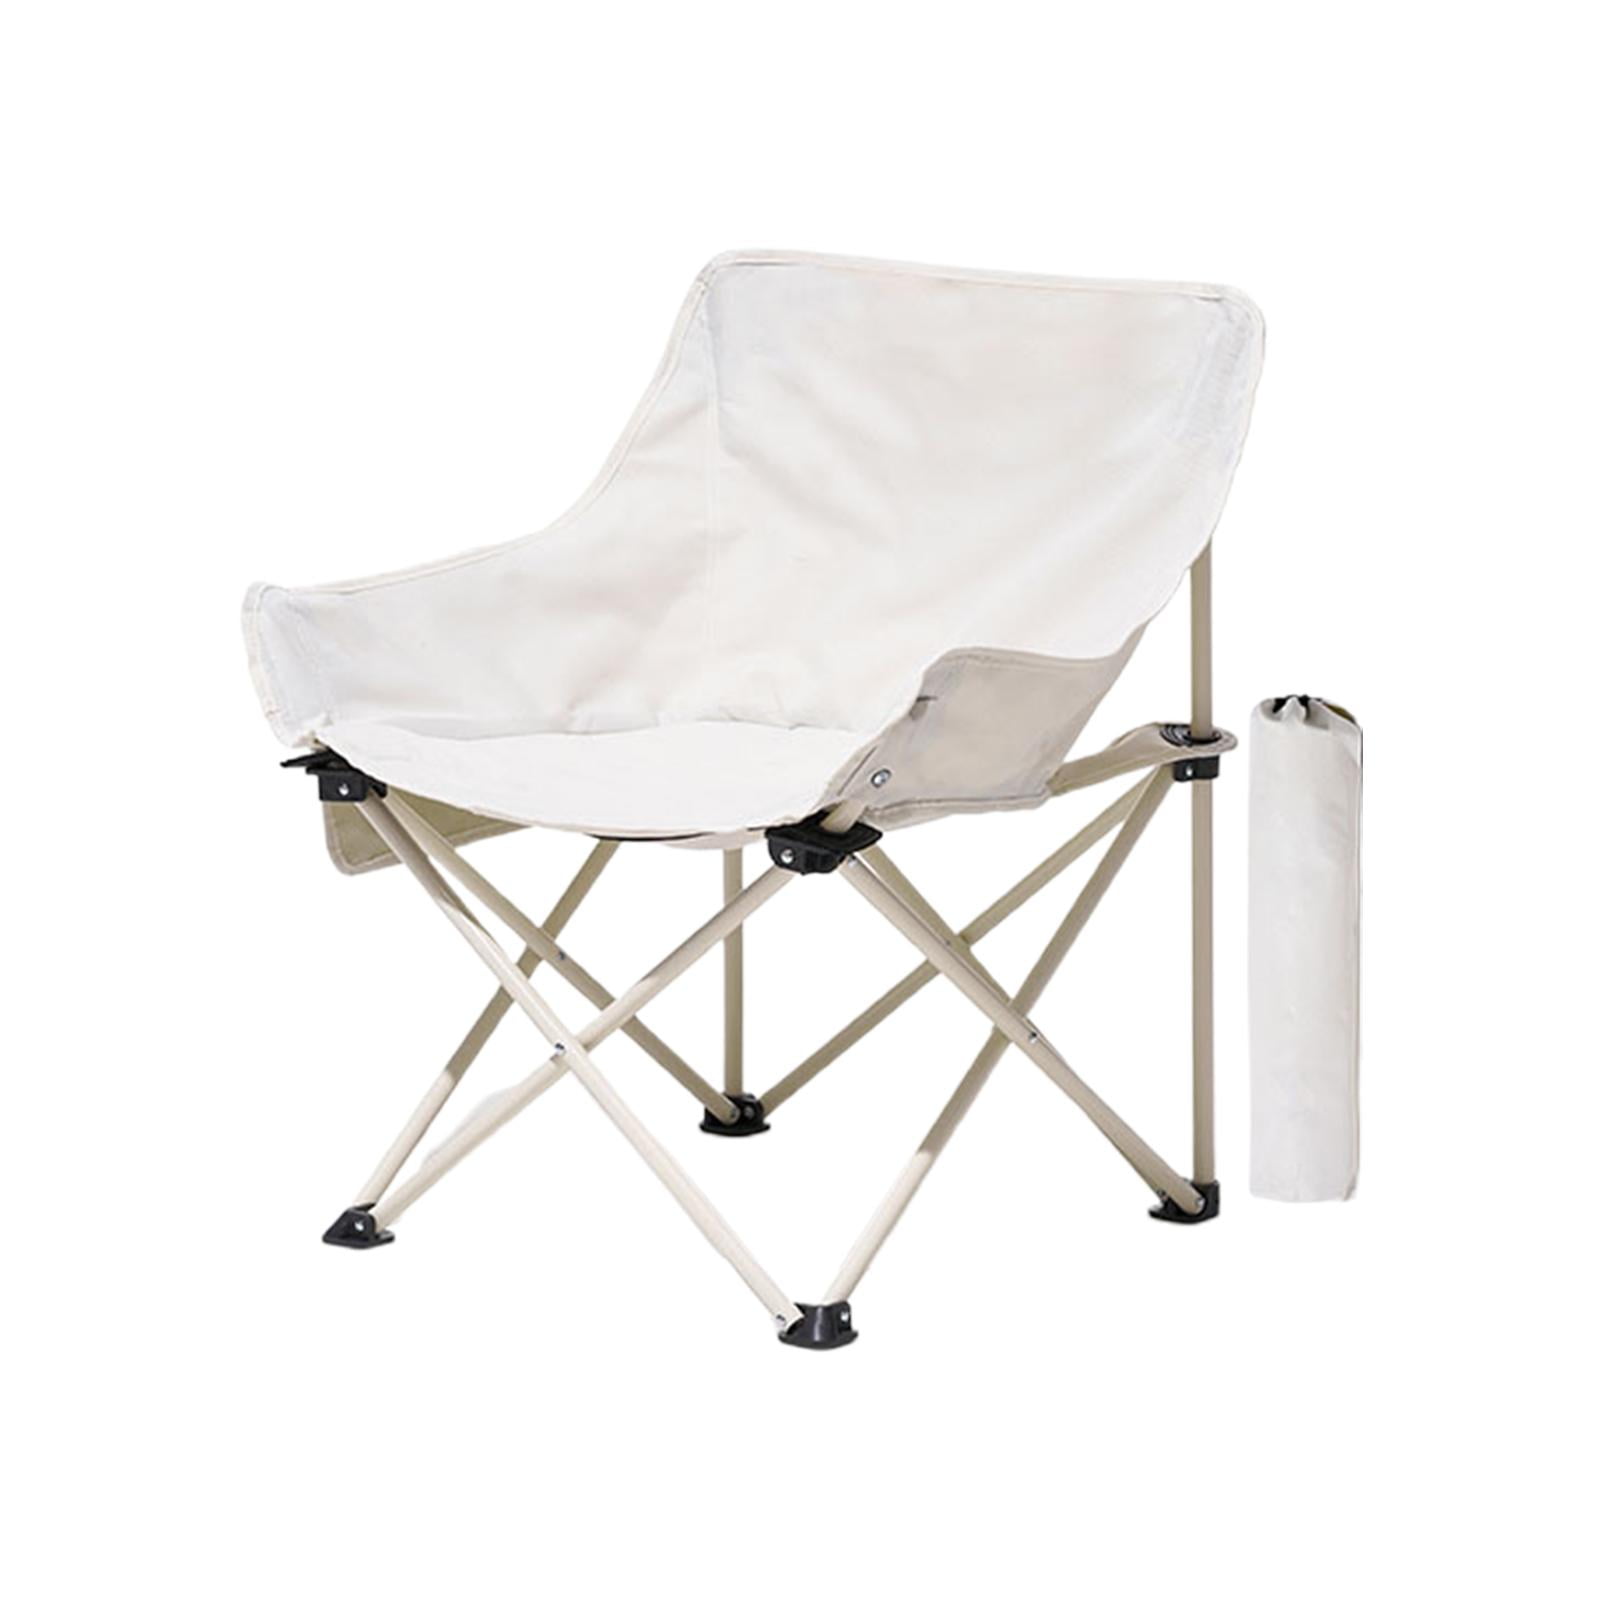 Lightweight Folding Chair Camping Stool Chair Lightweight